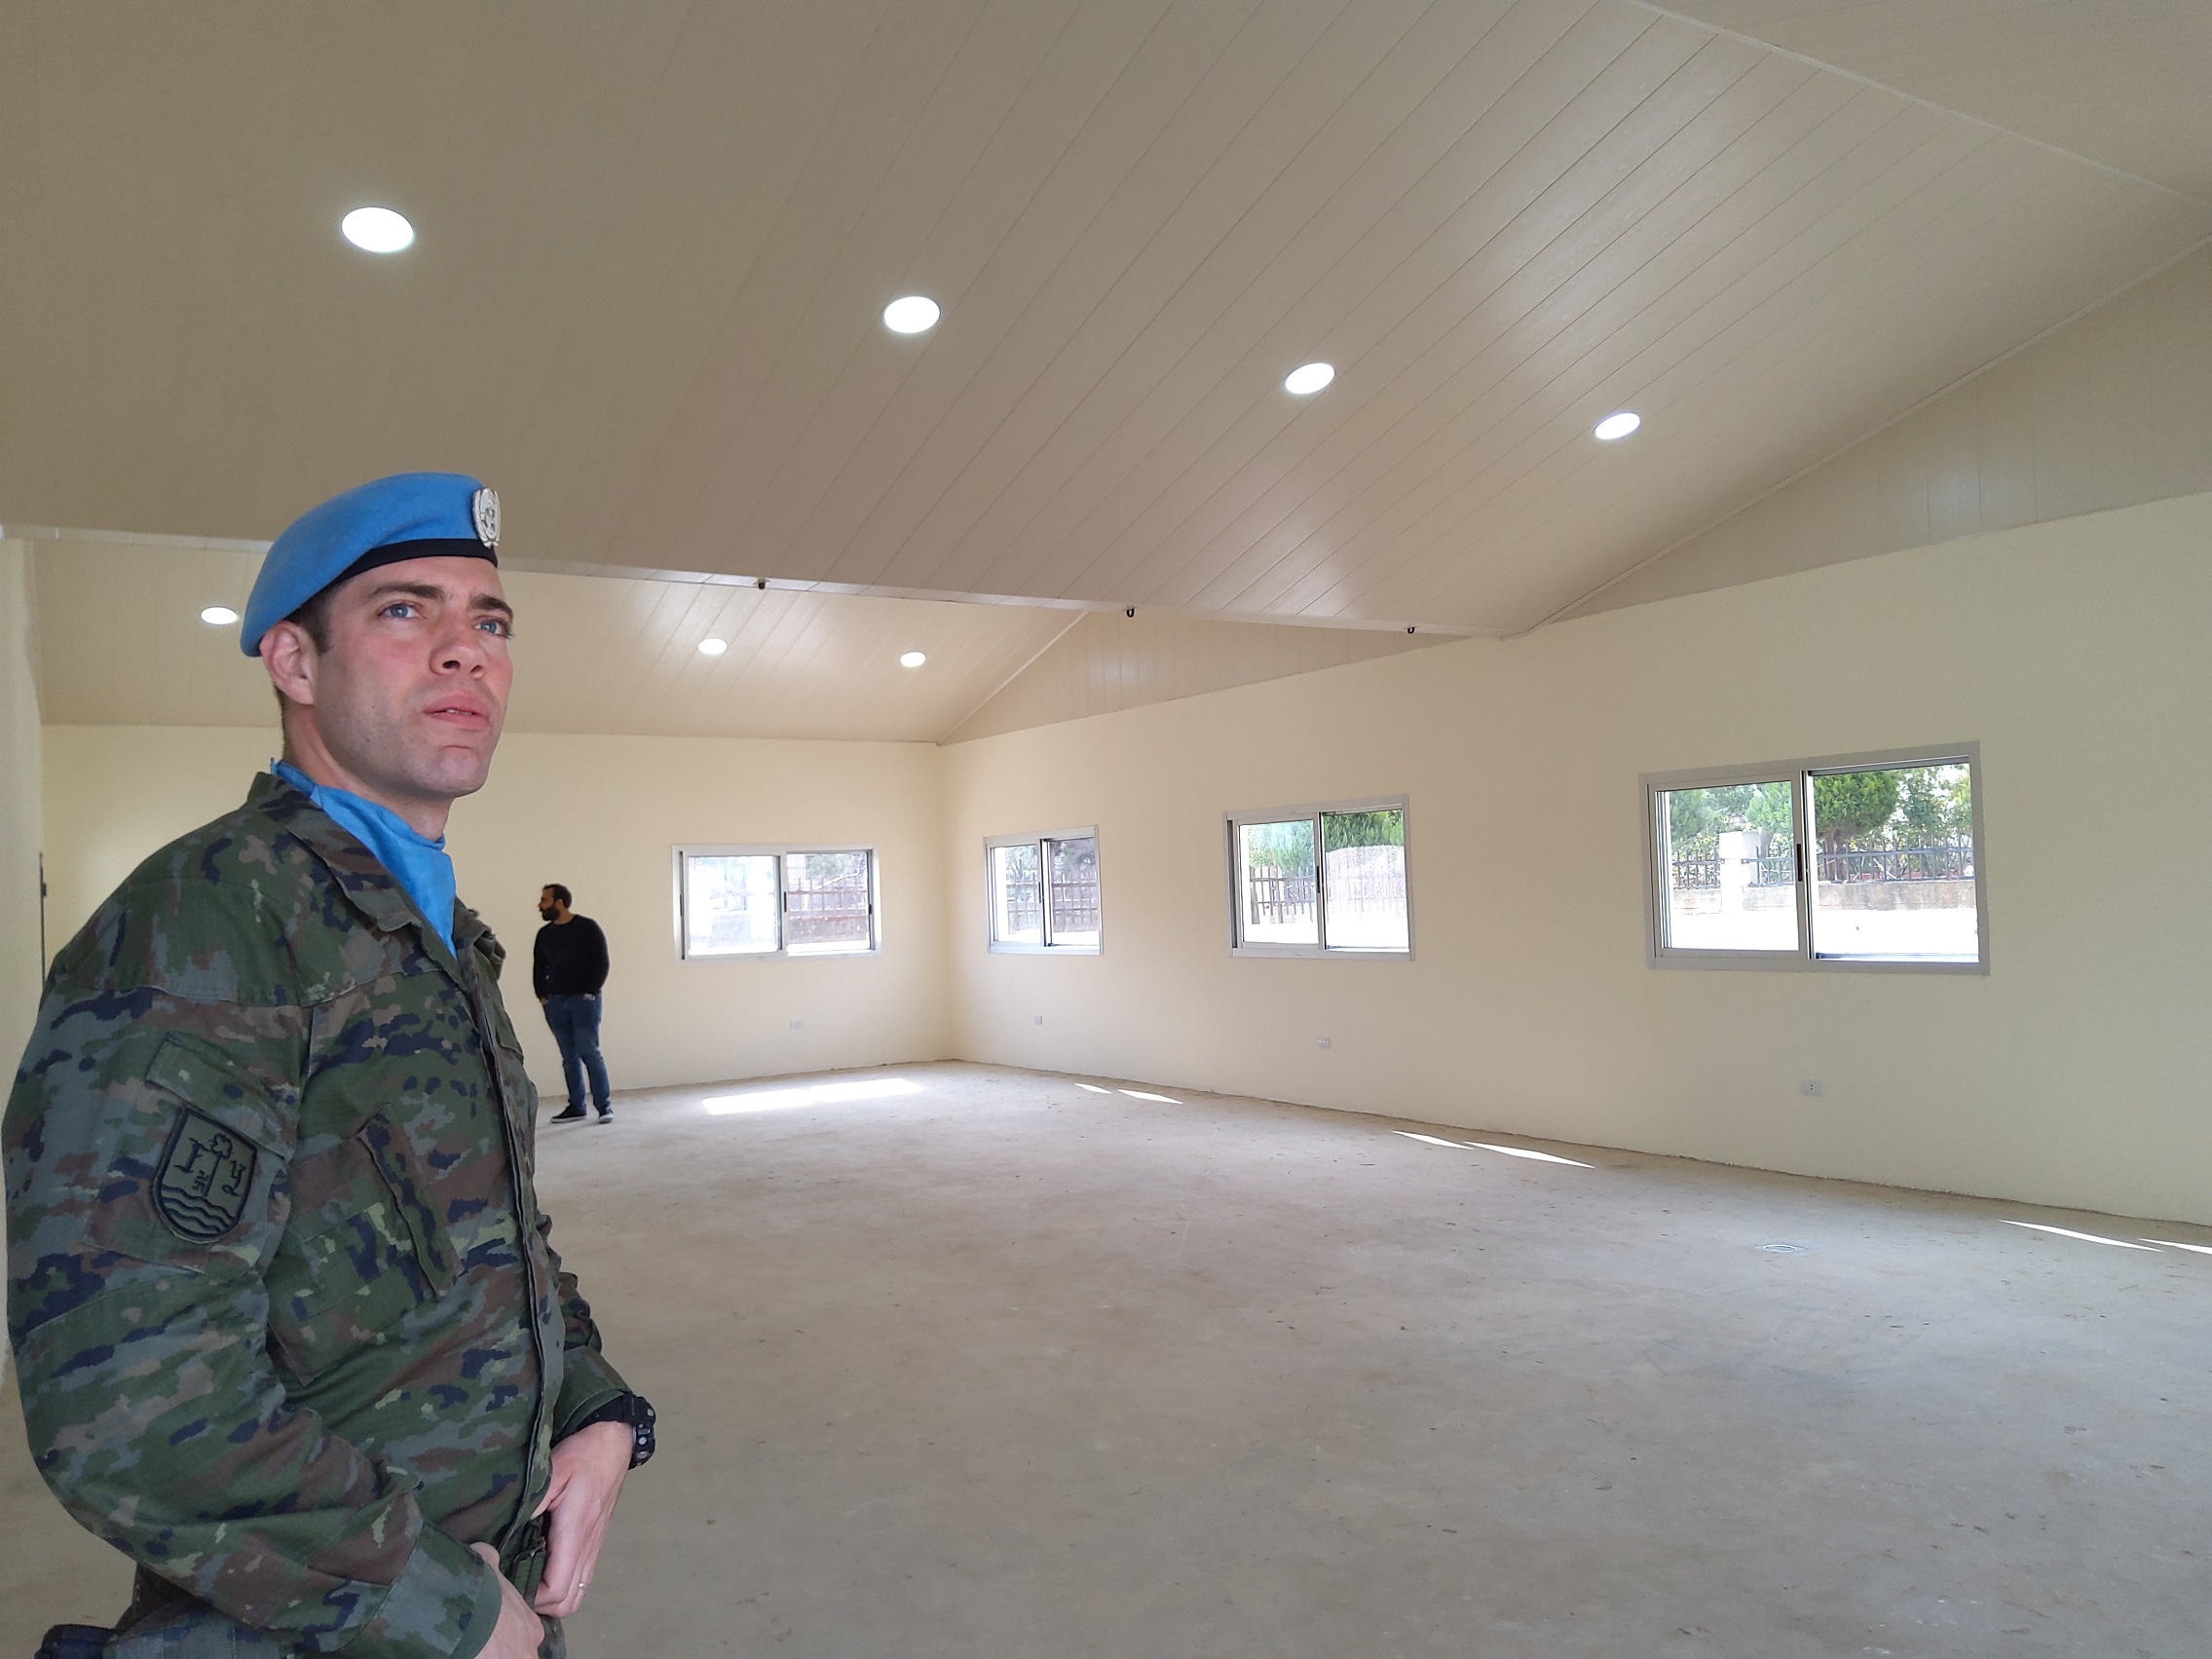 Militares españoles inauguran una nueva aula en un colegio libanés